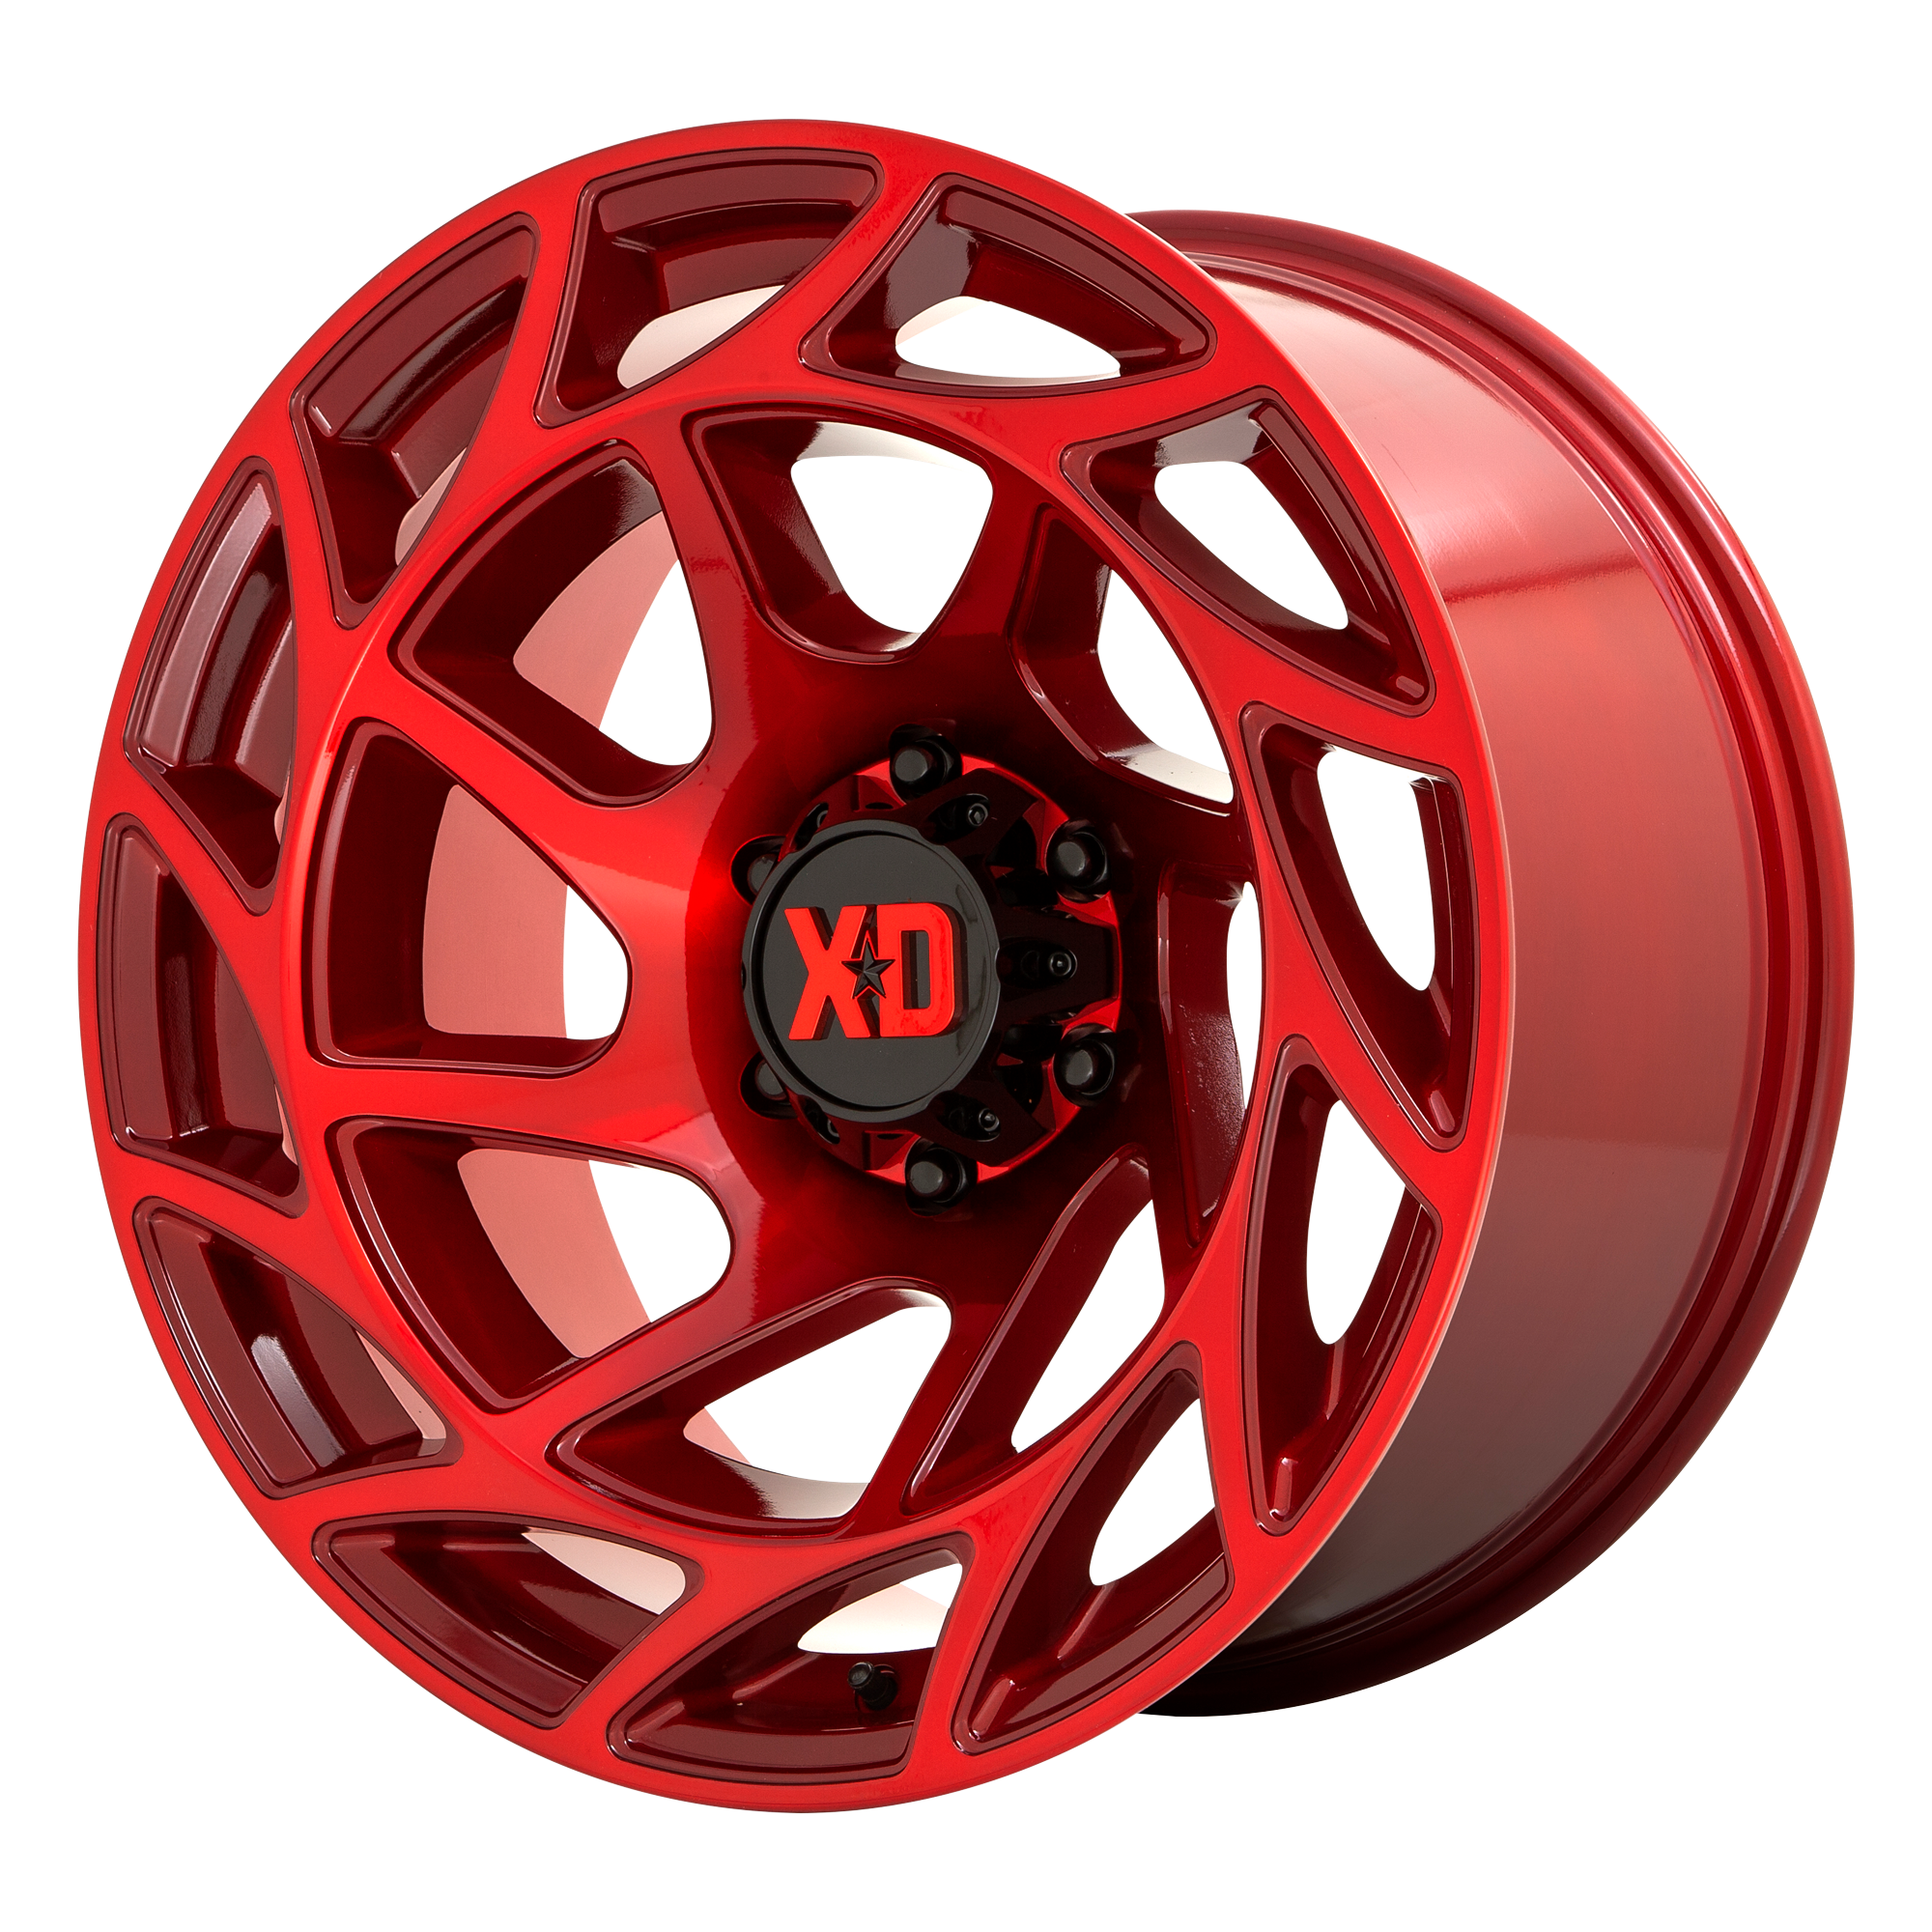 XD 20"x10" Non-Chrome Candy Red Custom Wheel ARSWCWXD86021080918N